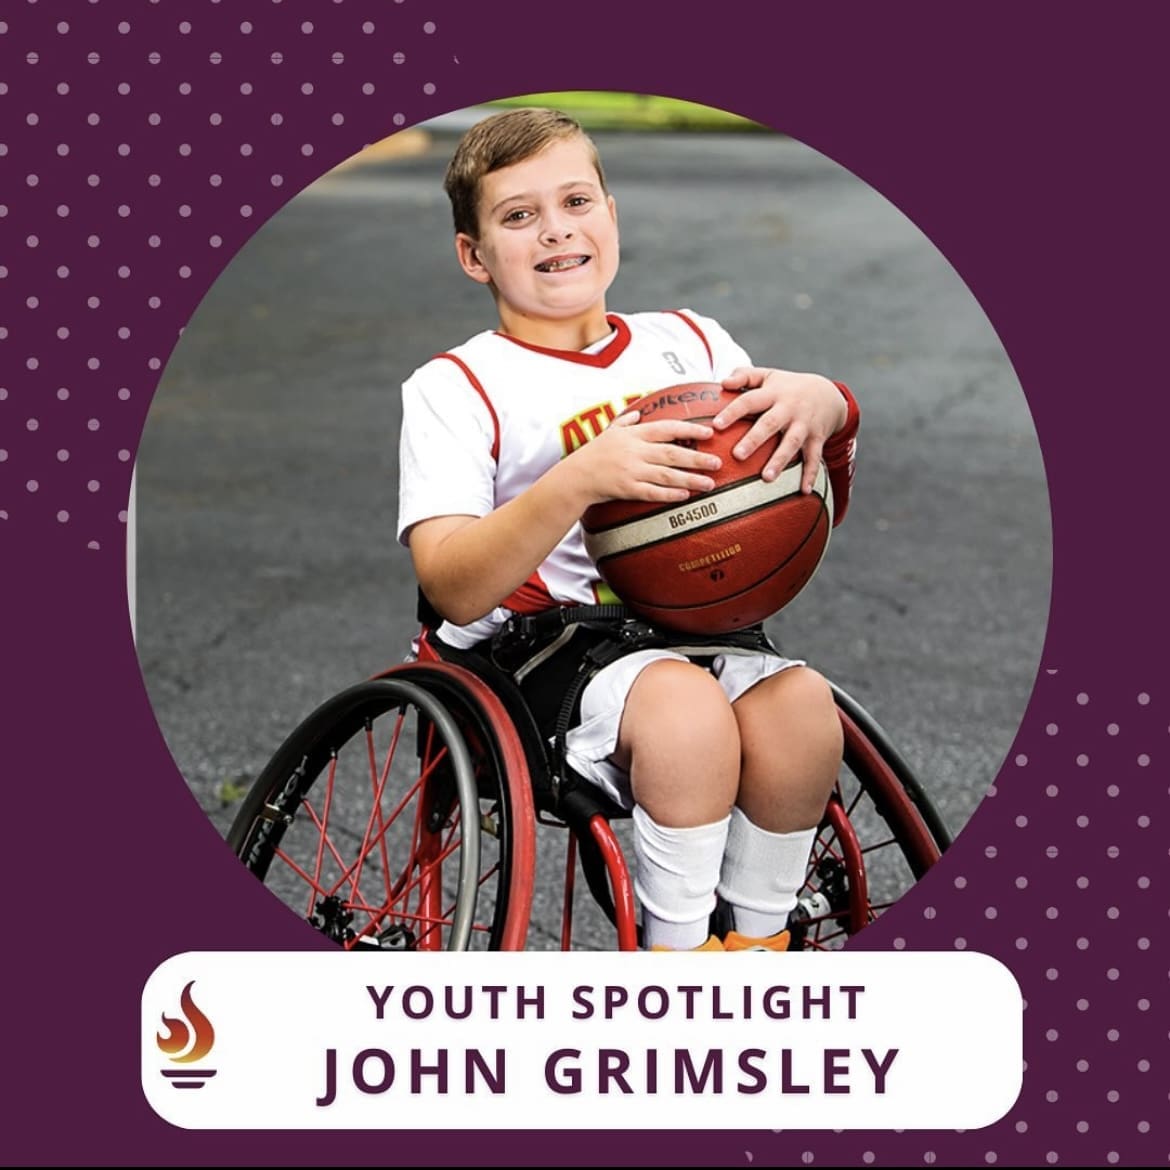 Youth Spotlight: John Grimsley